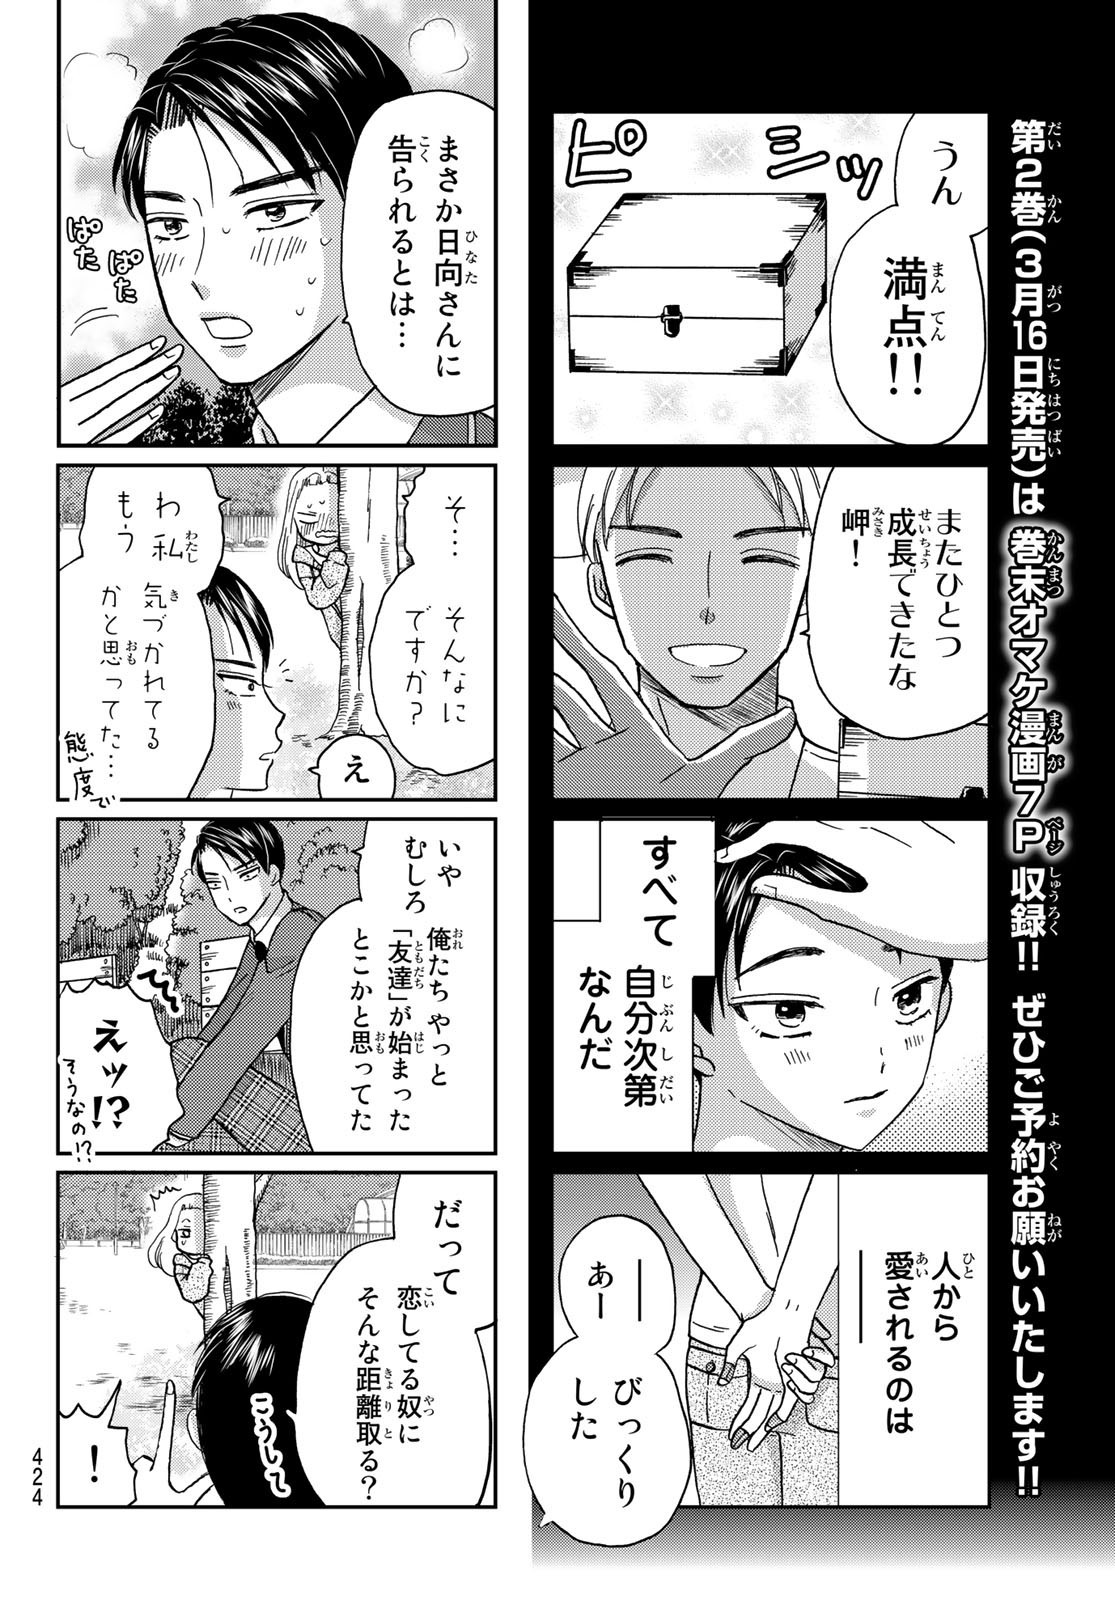 Hinata-san, Hoshino desu. - Chapter 025 - Page 2